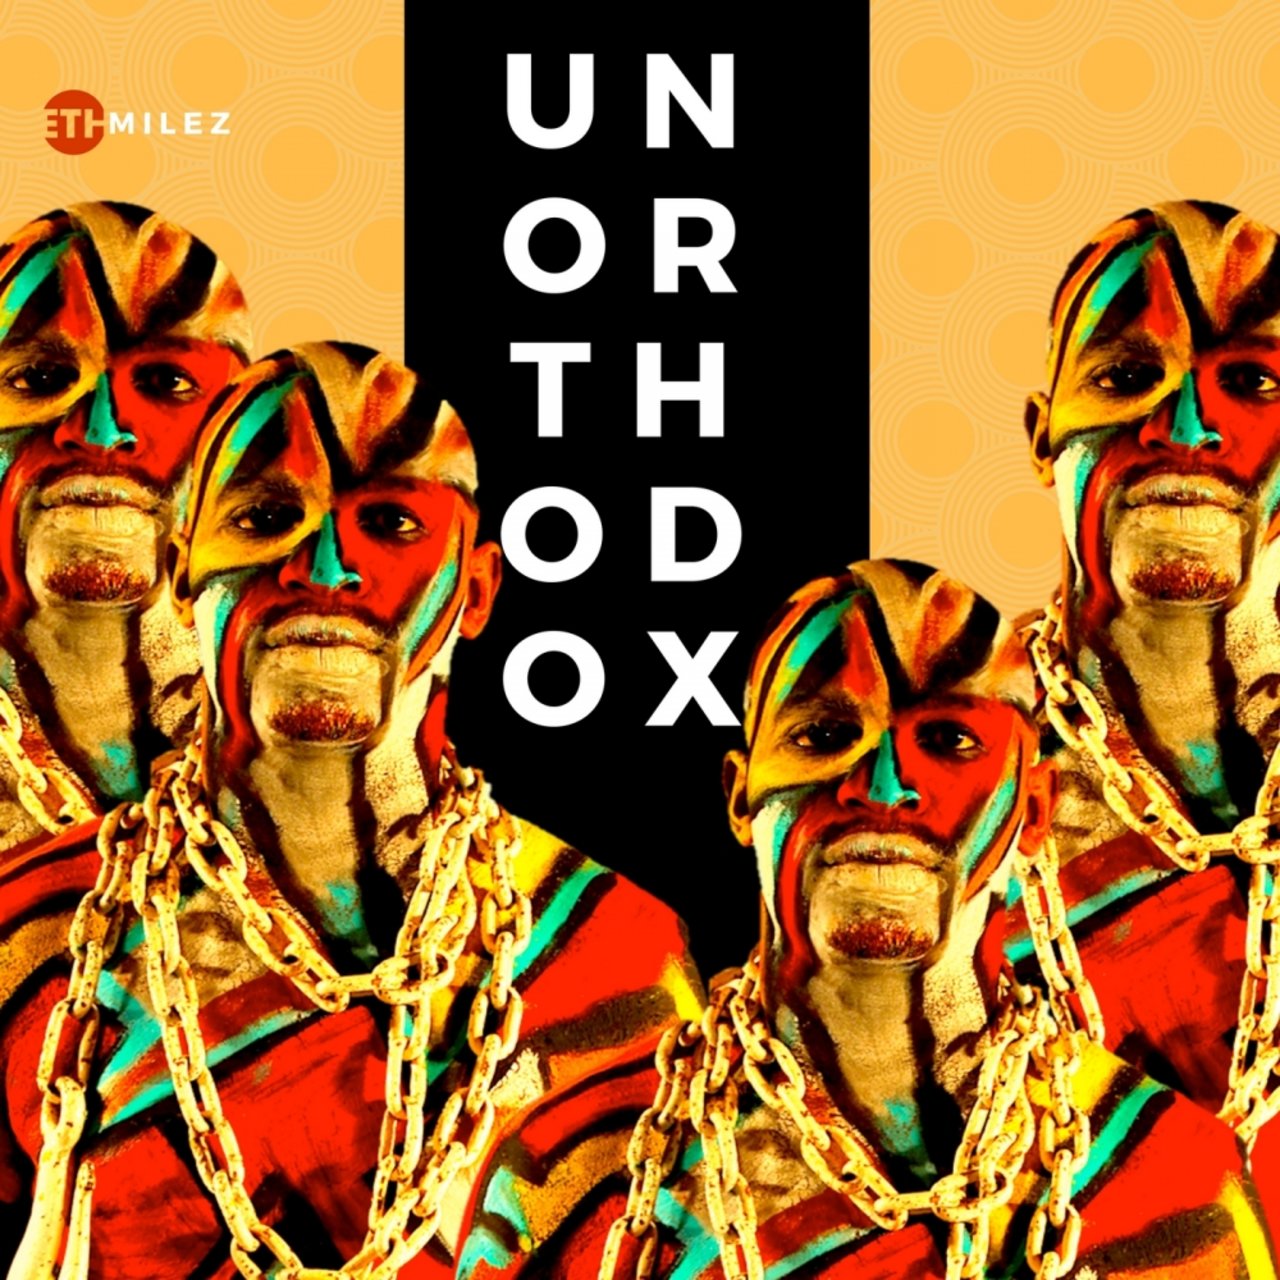 MileZ - Unorthodox / Ethnic Records